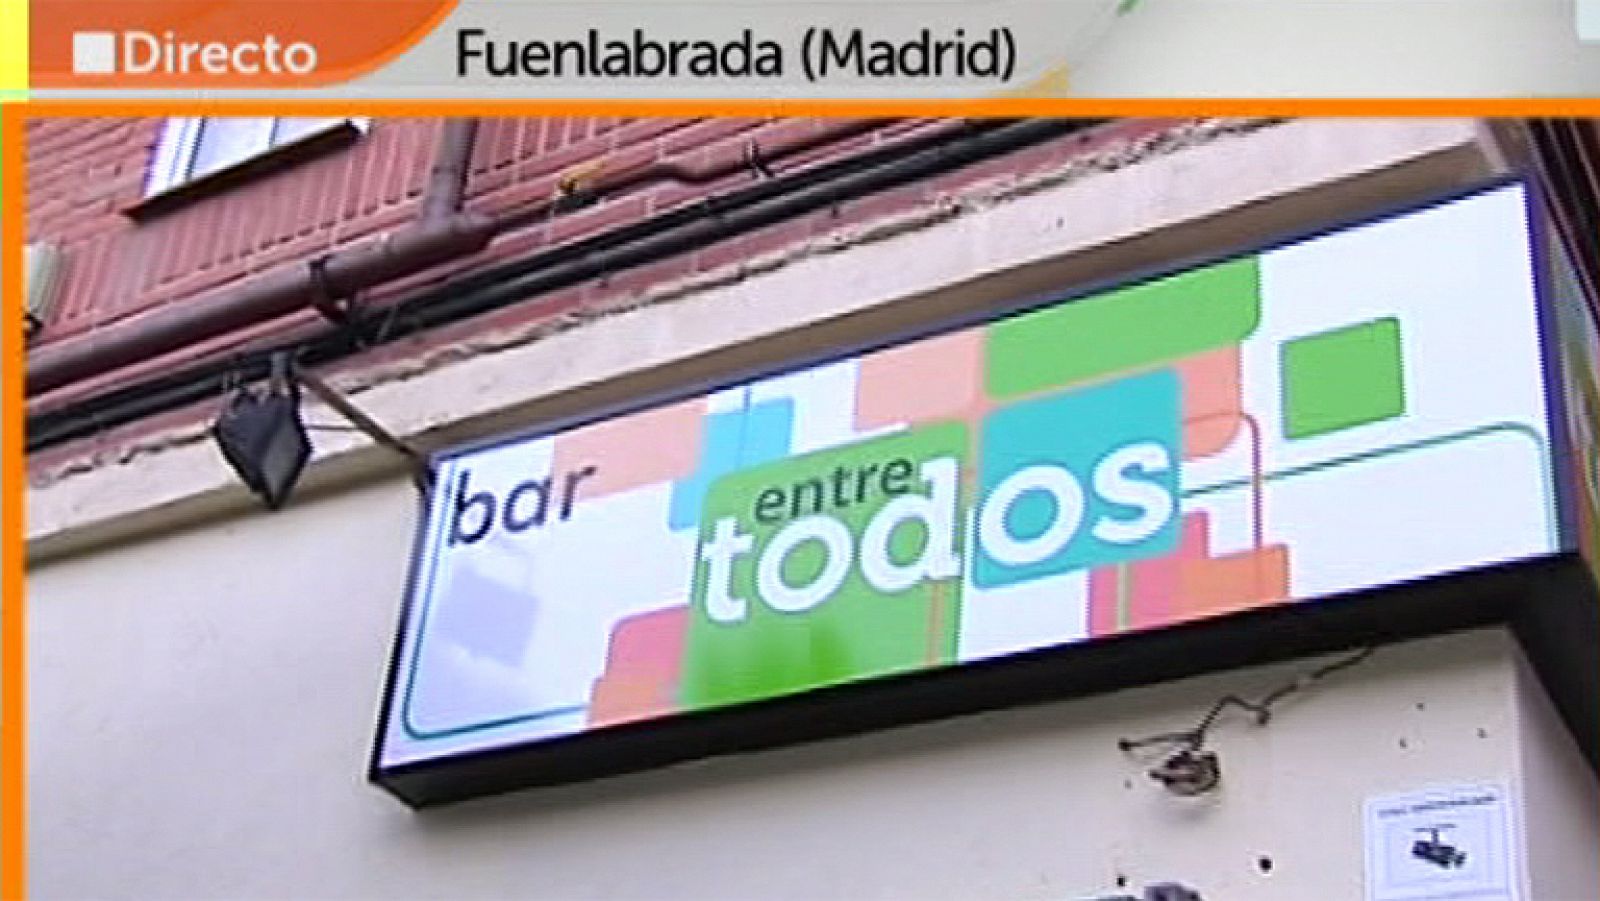 Entre Todos - Antonio ya ha abierto su bar en Fuenlabrada (Madrid)